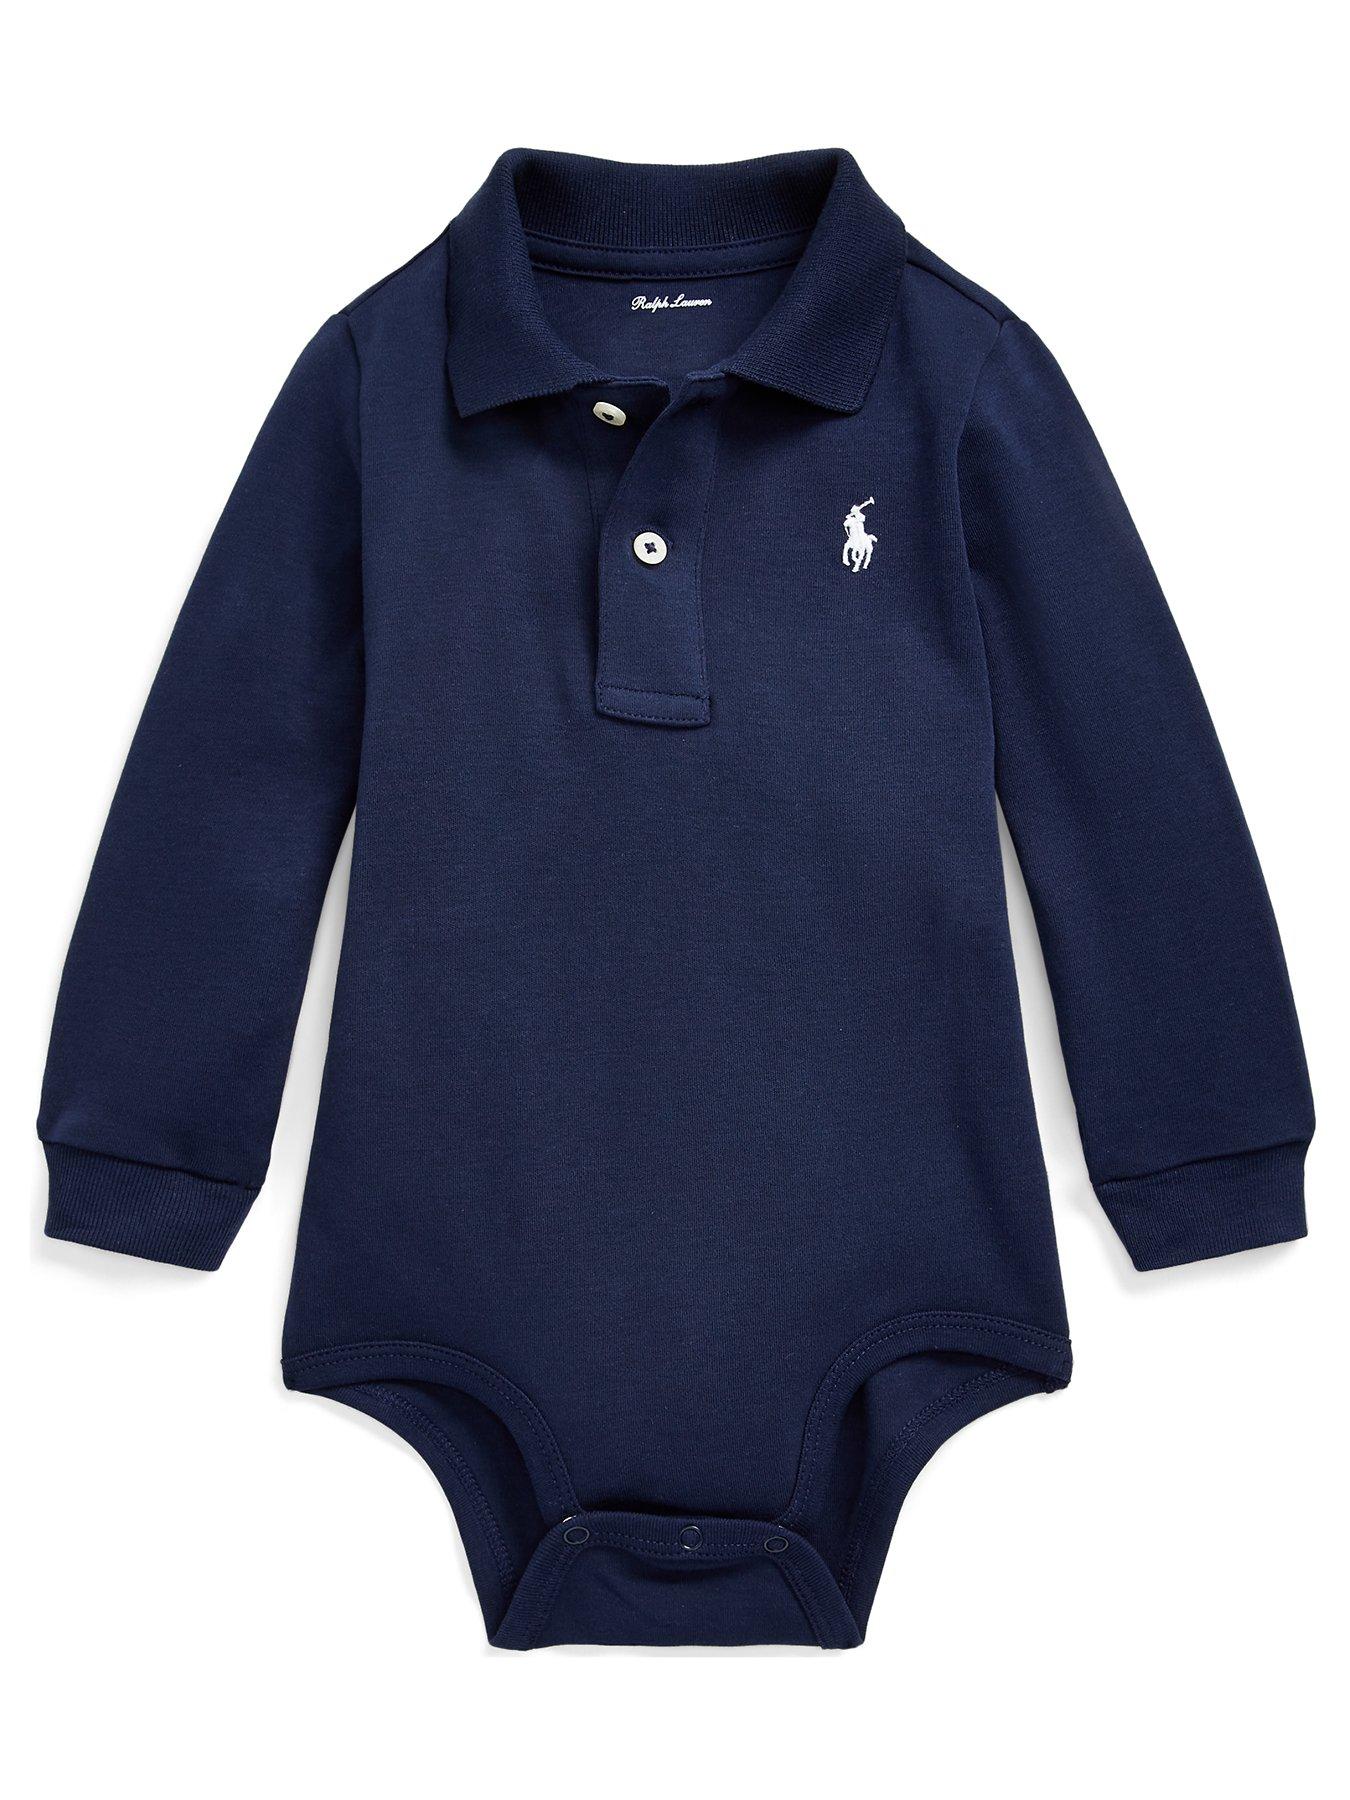 polo infant coats